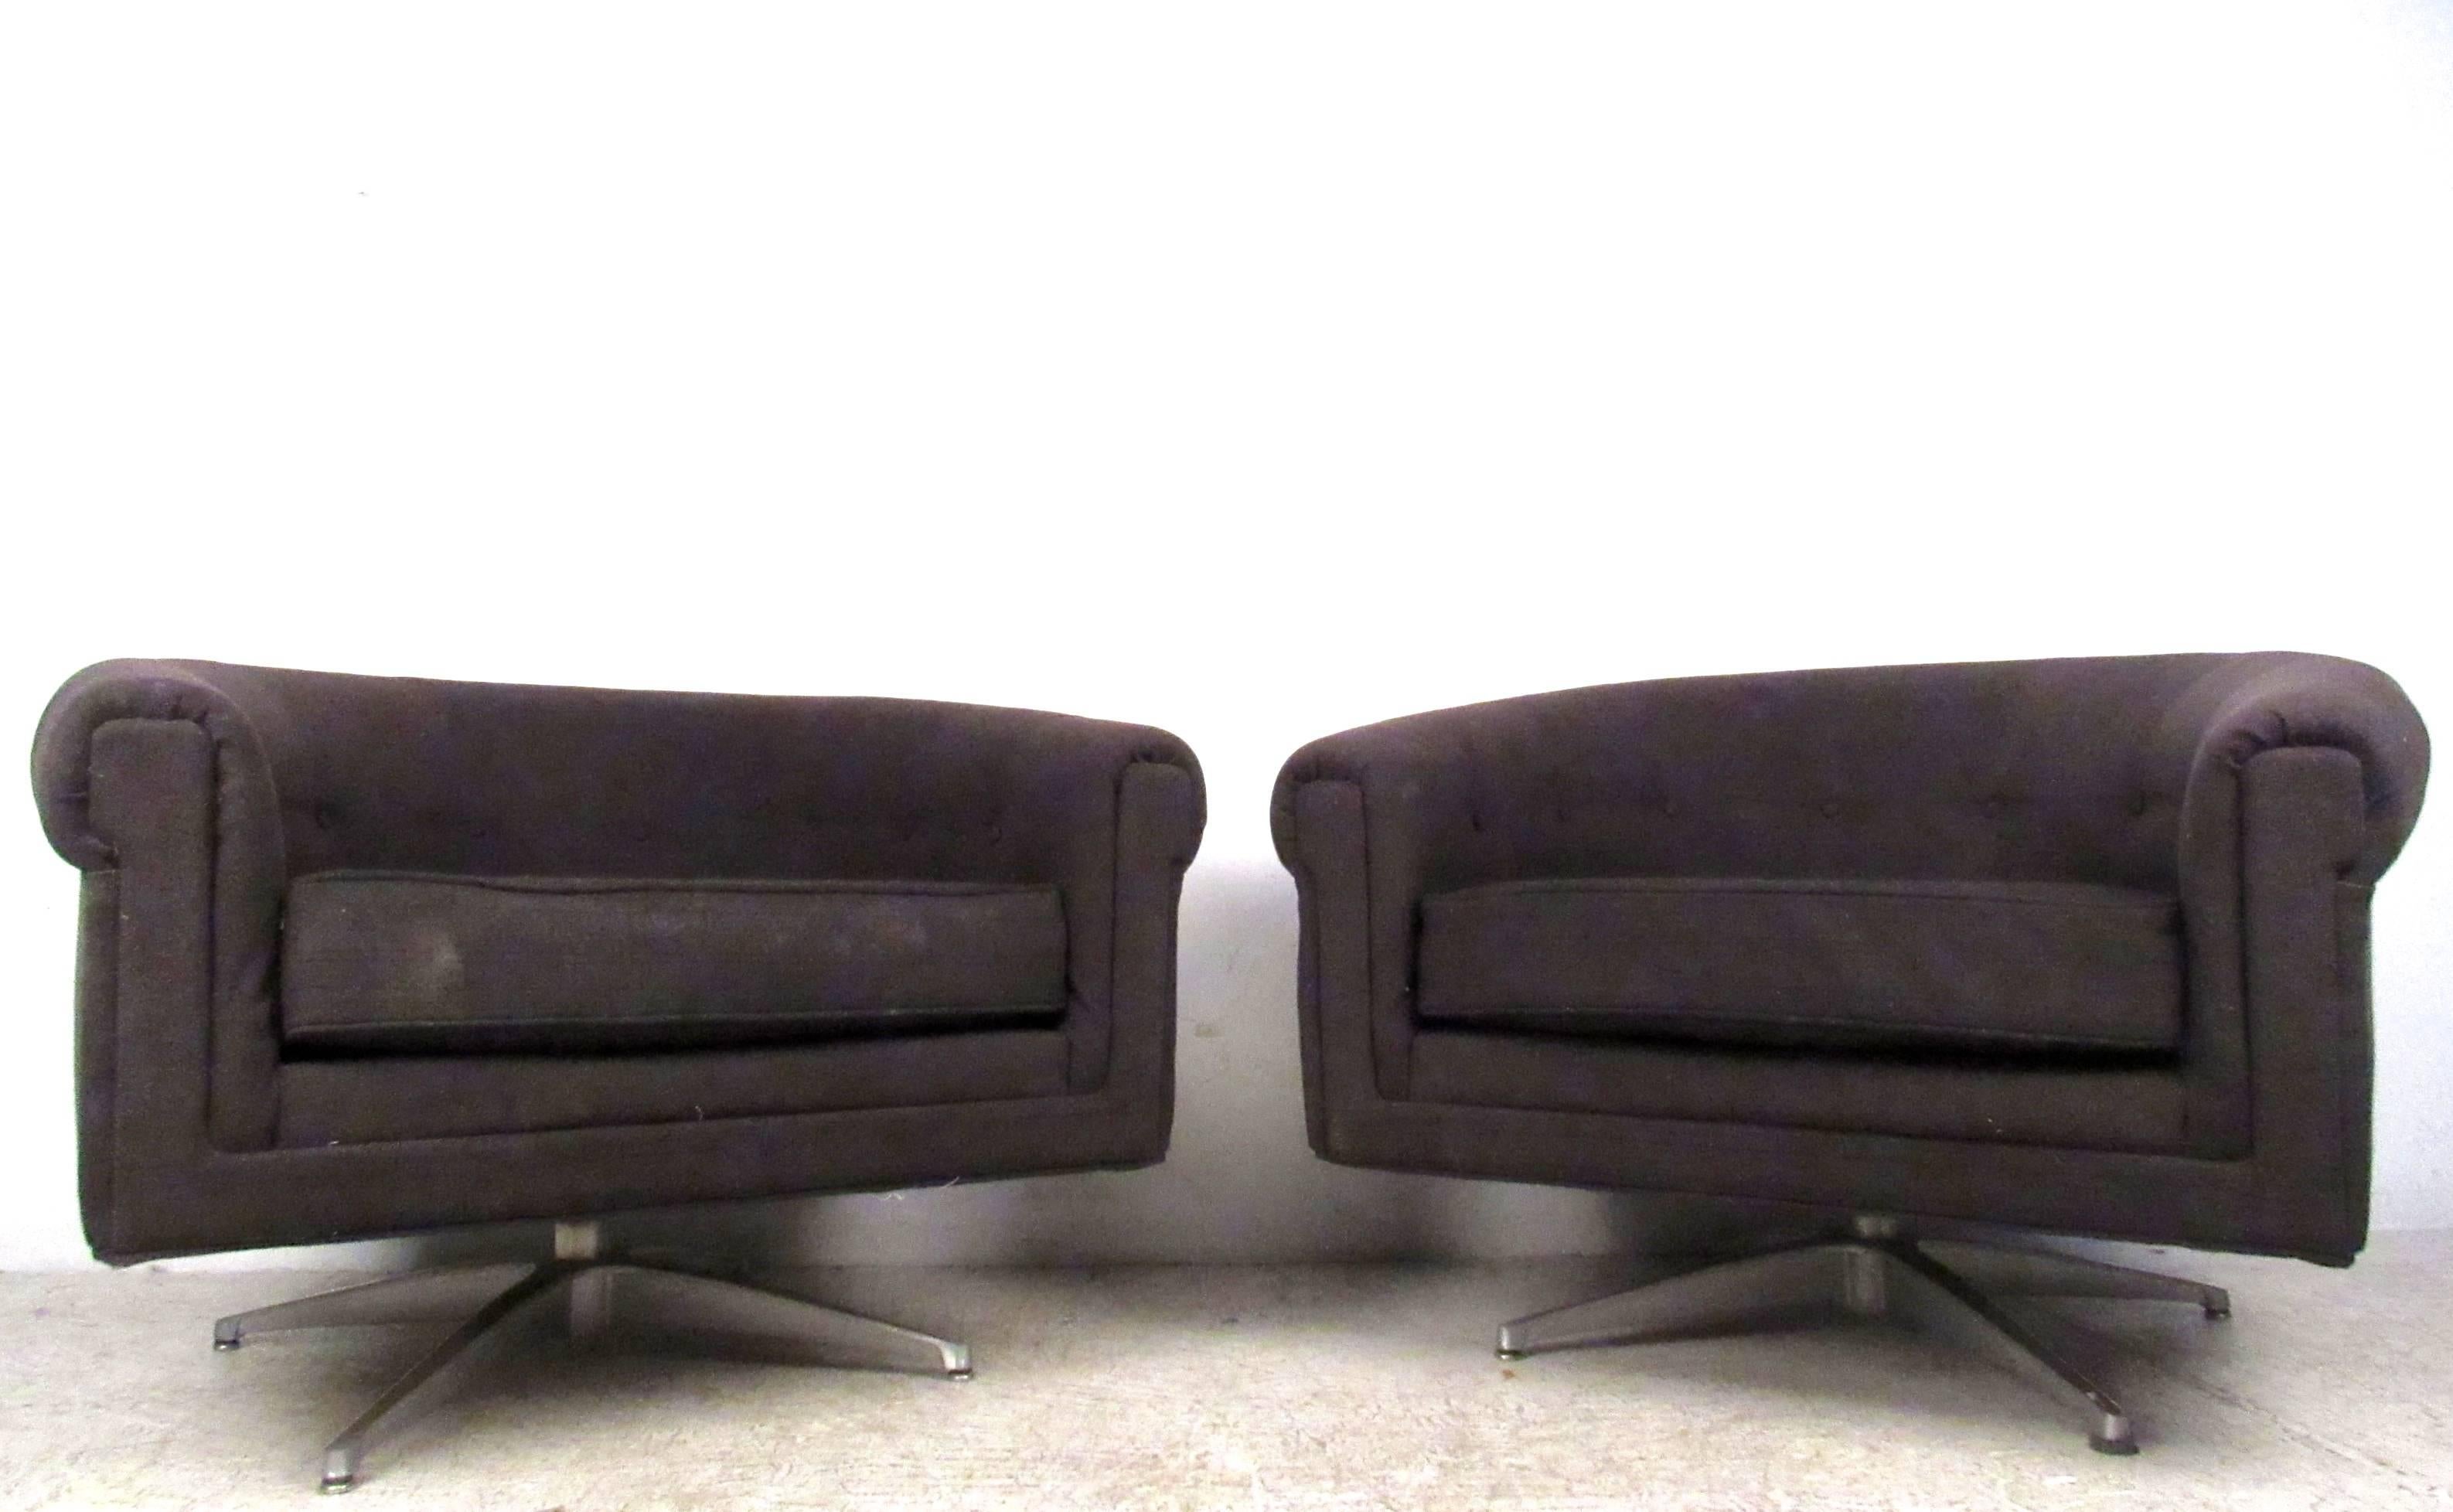 Cette paire confortable de chaises longues pivotantes de Selig constitue un ajout élégant à tout environnement. Avec des sièges à dossier arrondi et des bases métalliques robustes, cette paire unique et assortie est parfaite pour la maison ou le